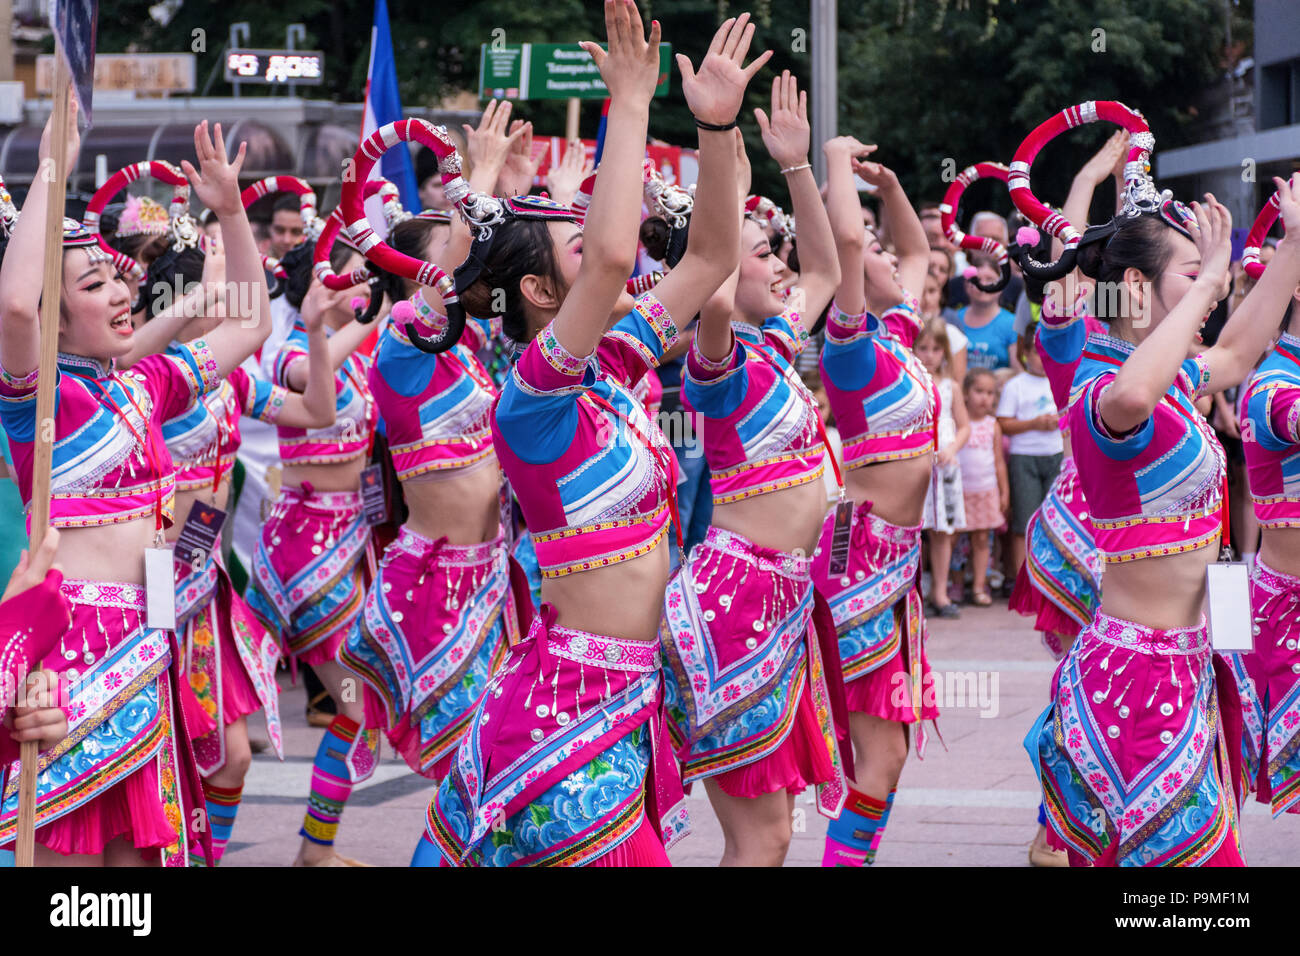 Nis, Serbien - Juli 16, 2018: Chinesische Mädchen tanzen Volkstanz in traditionellen Kostümen auf einem Festival auf dem Platz der Stadt. Close Up, selektiver Fokus Stockfoto